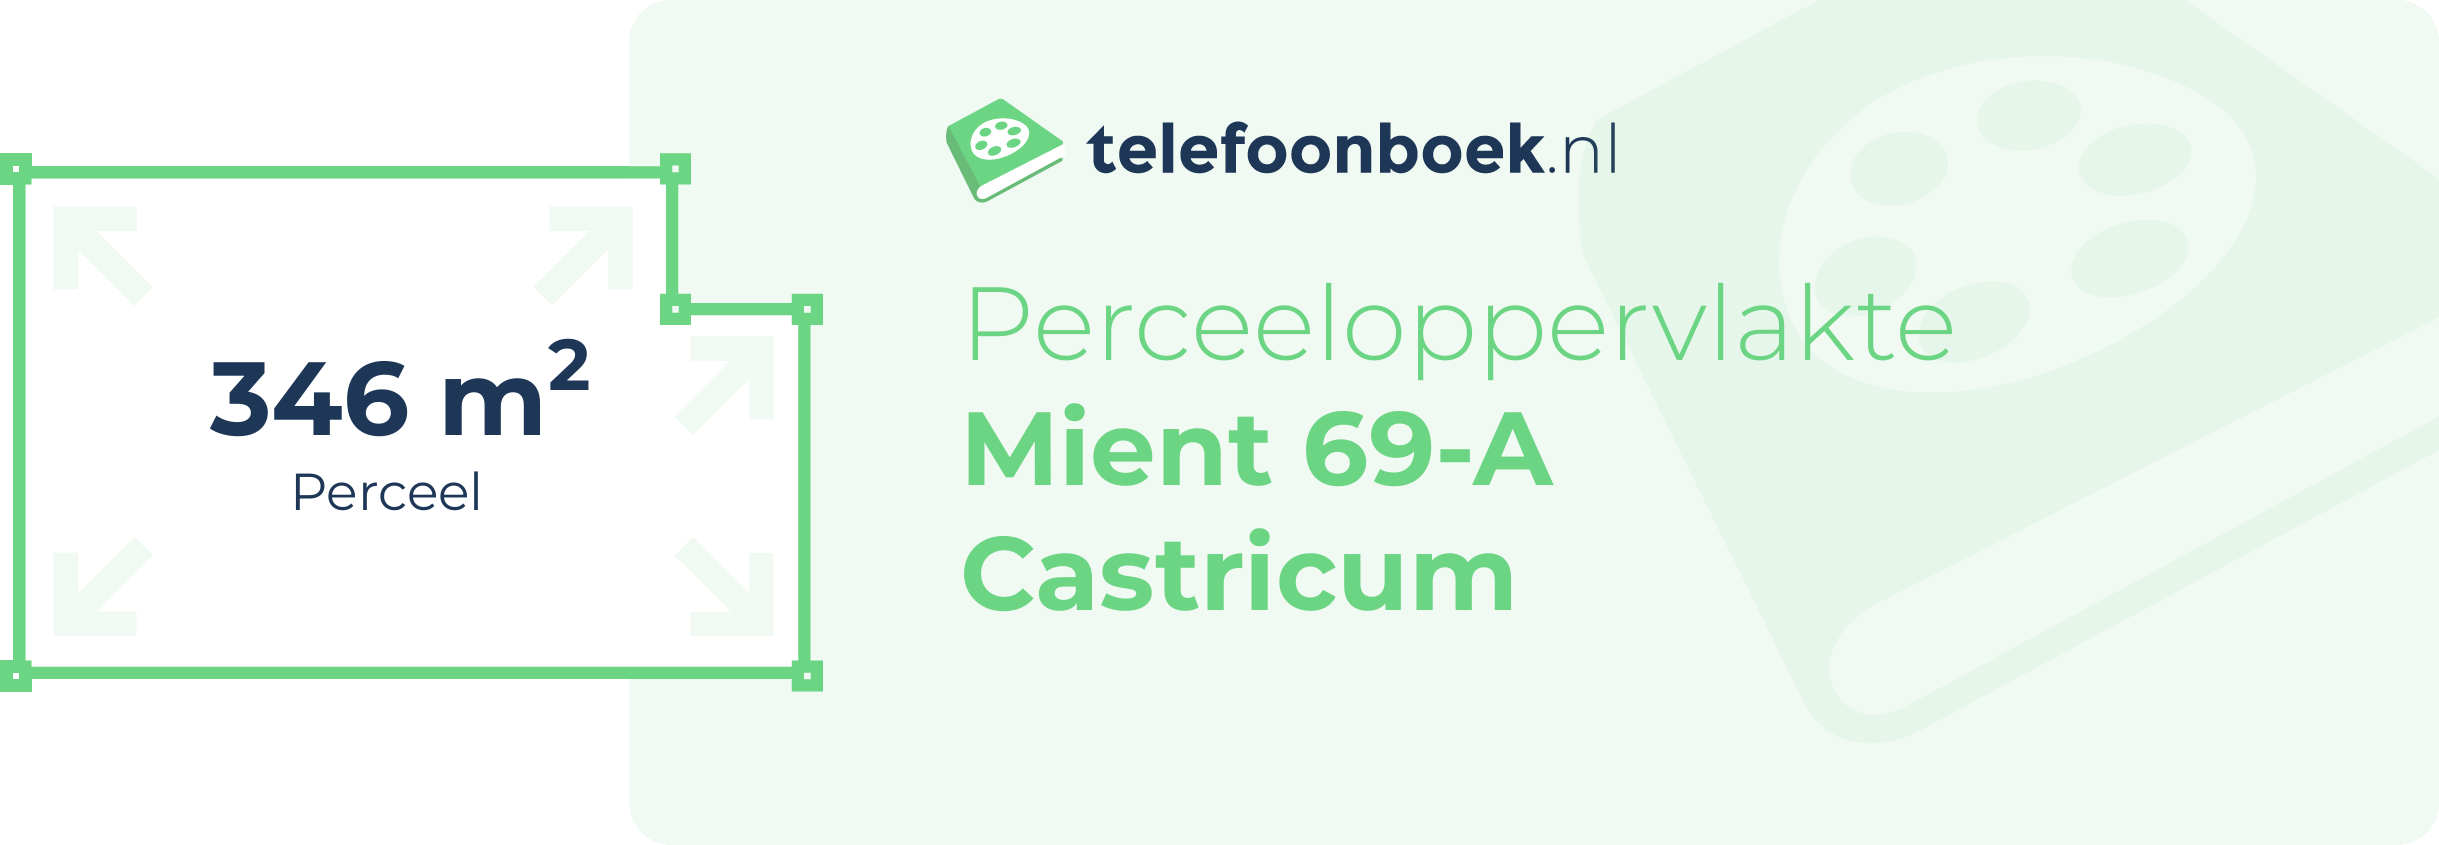 Perceeloppervlakte Mient 69-A Castricum